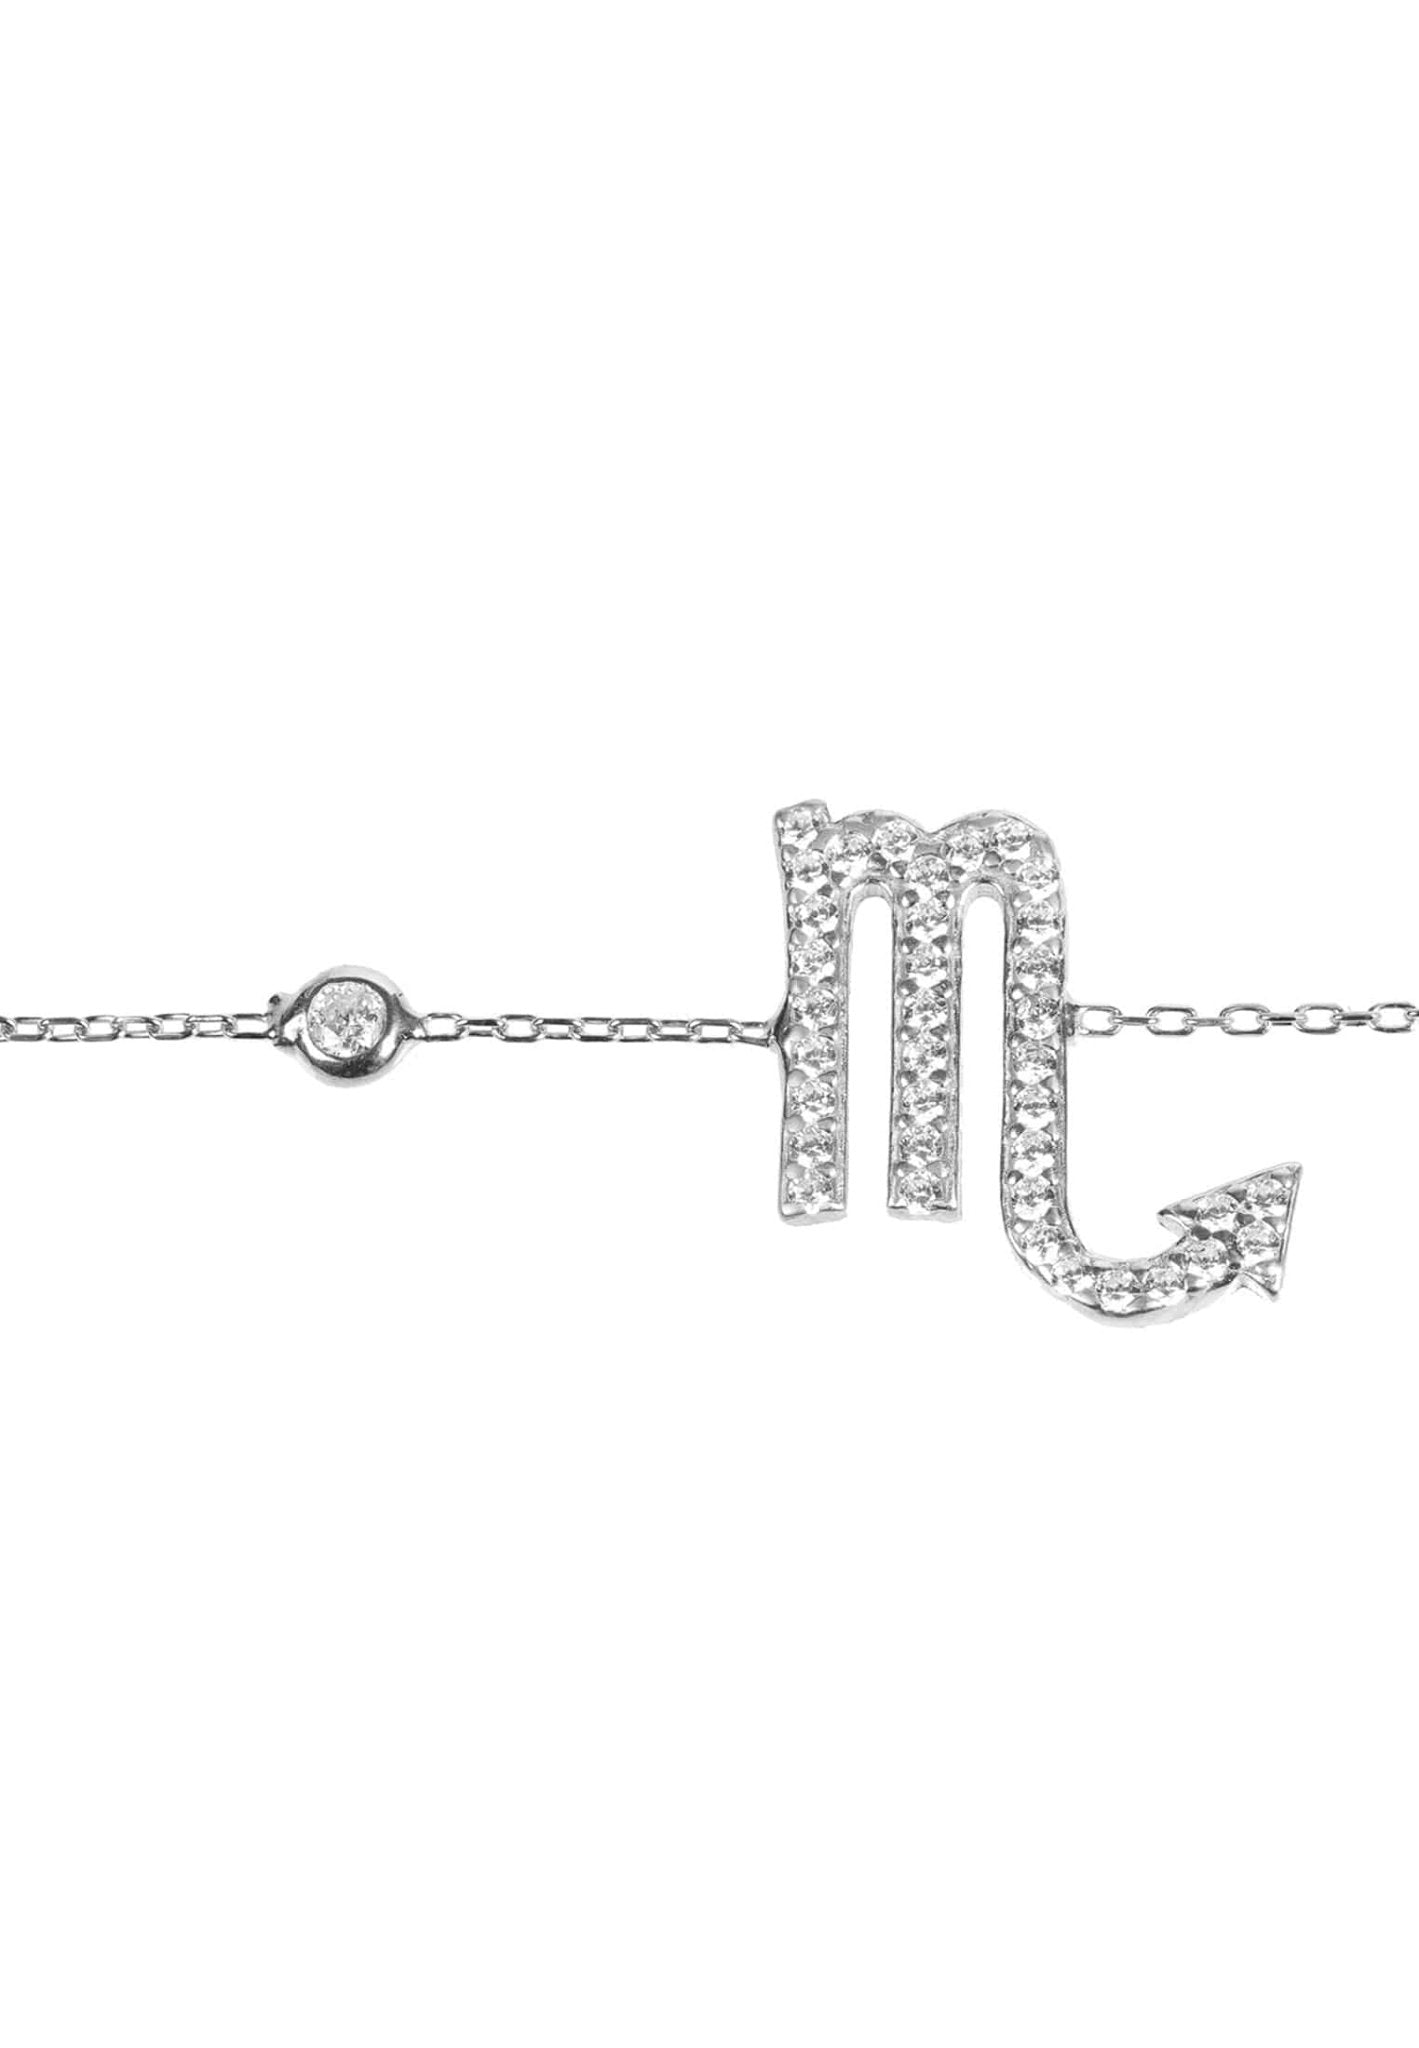 Personalized Bracelets - Zodiac Star Sign Bracelet Scorpio 